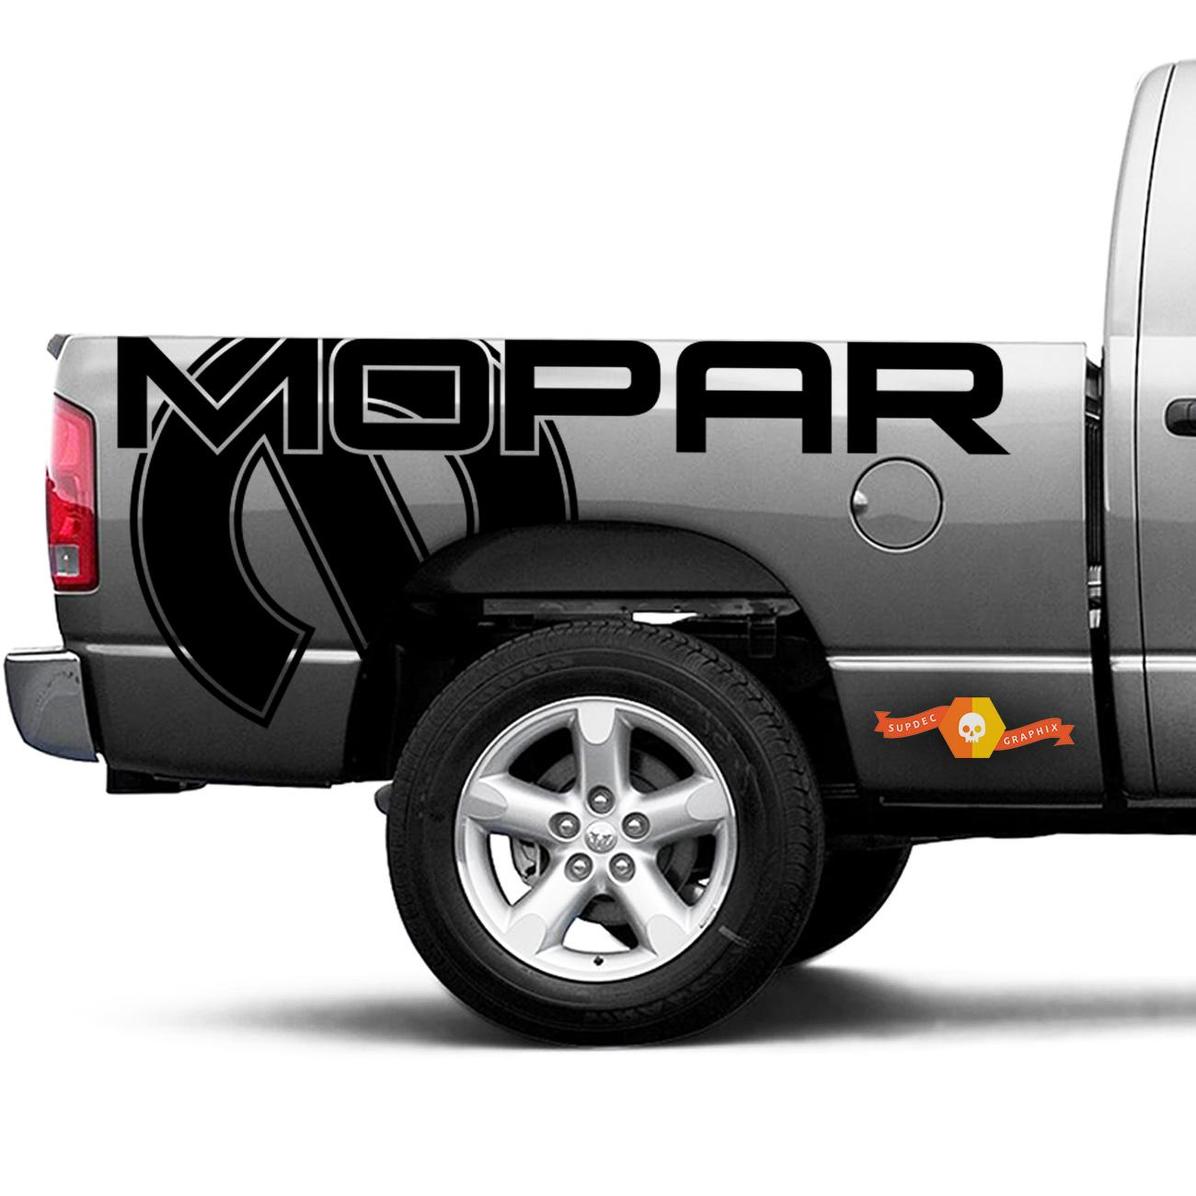 Dodge Ram Truck 1500/2500 MOPAR Seite Grafik Vinyl Aufkleber Aufkleber passt Modelle 2002-2020